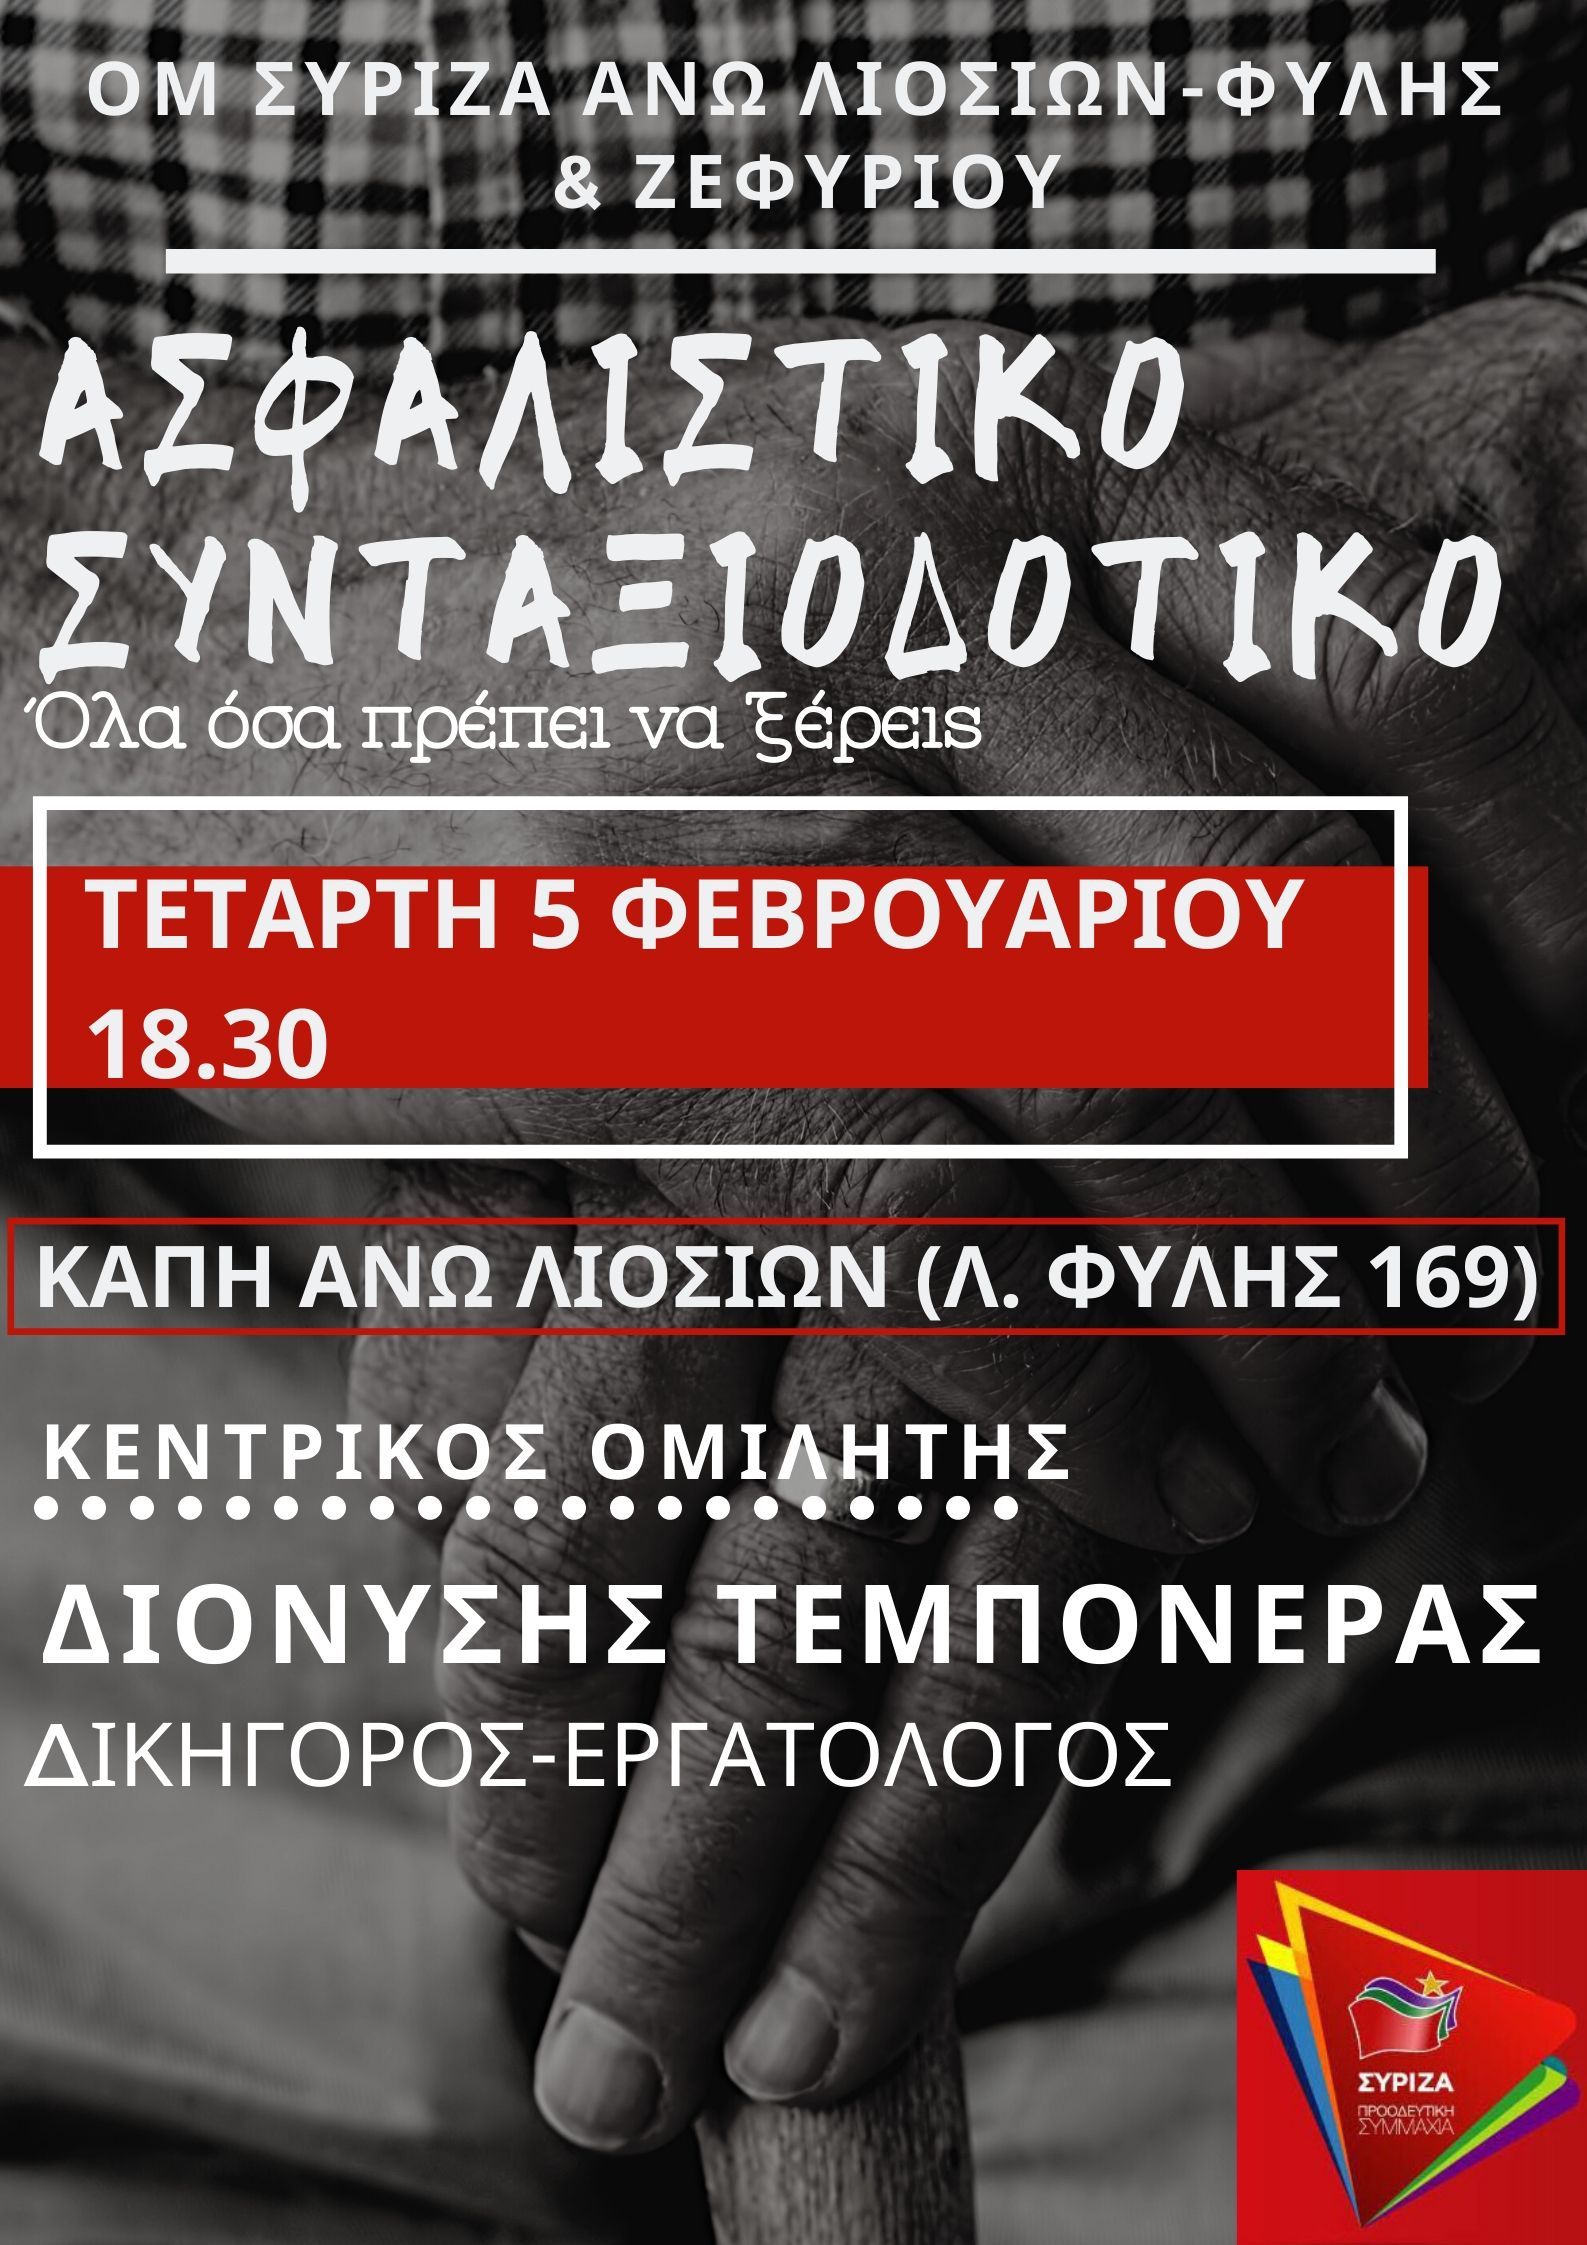 Ανοιχτή πολιτική εκδήλωση του ΣΥΡΙΖΑ - Προοδευτική Συμμαχία στα Α. Λιόσια για το ασφαλιστικό - συνταξιοδοτικό